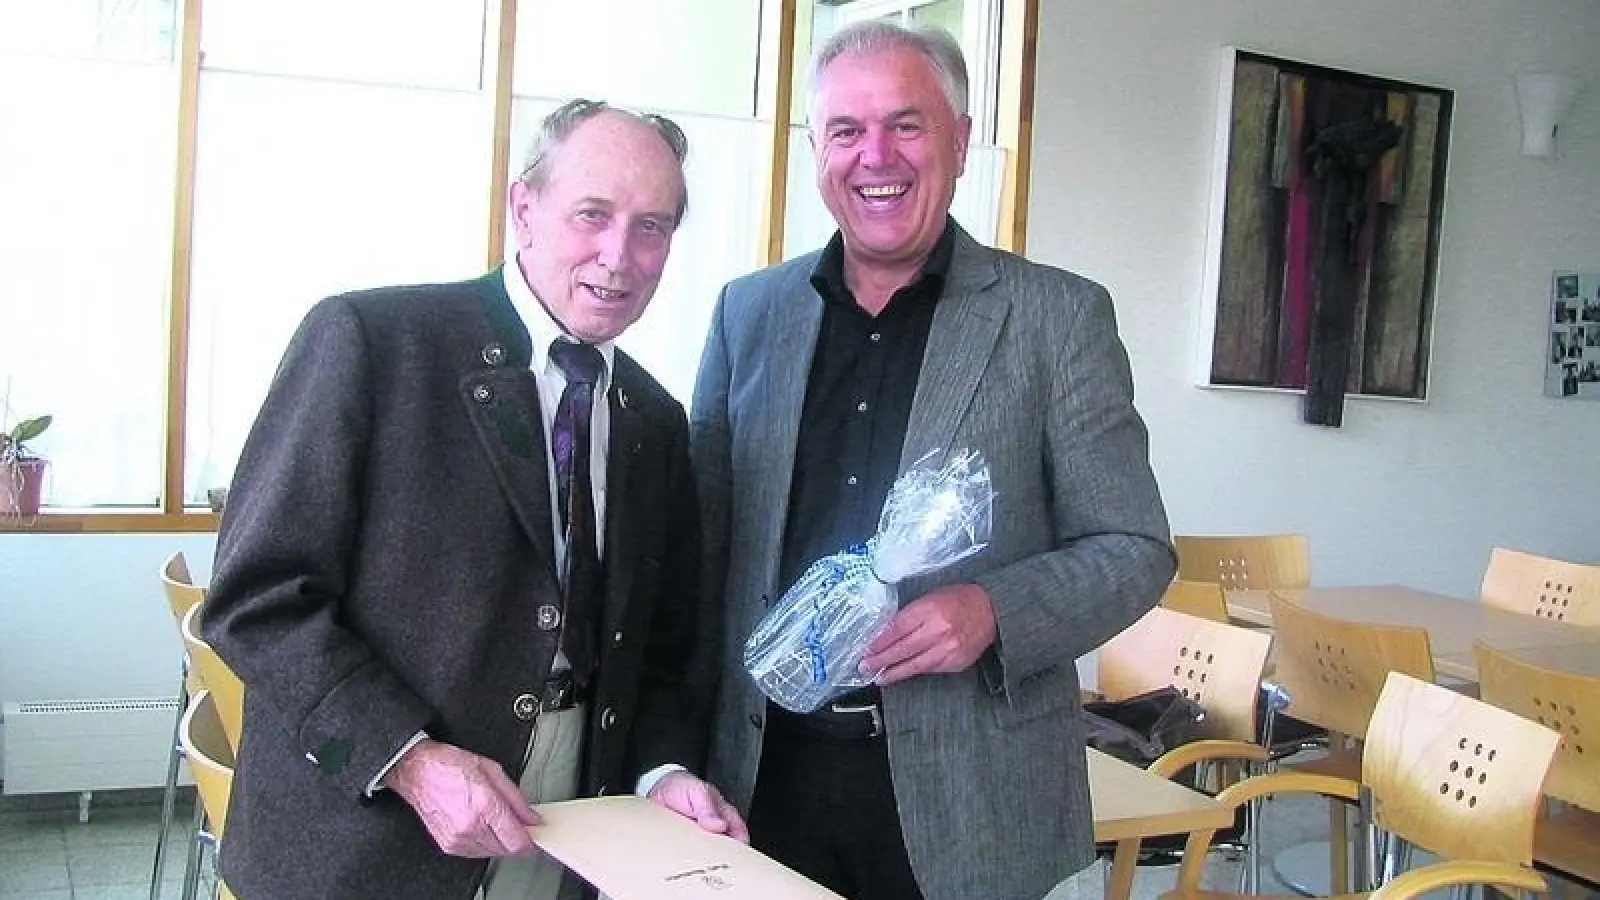 &lt;p&gt;  &lt;x_bildunterschr&gt;  &lt;b&gt;Rudolf Kloss &lt;/b&gt; feierte kürzlich seinen 80. Geburtstag. Zum Gratulieren kam auch Bürgermeister Konrad Wagner.  &lt;tab/&gt;Foto: Huber &lt;/x_bildunterschr&gt;  &lt;/p&gt;